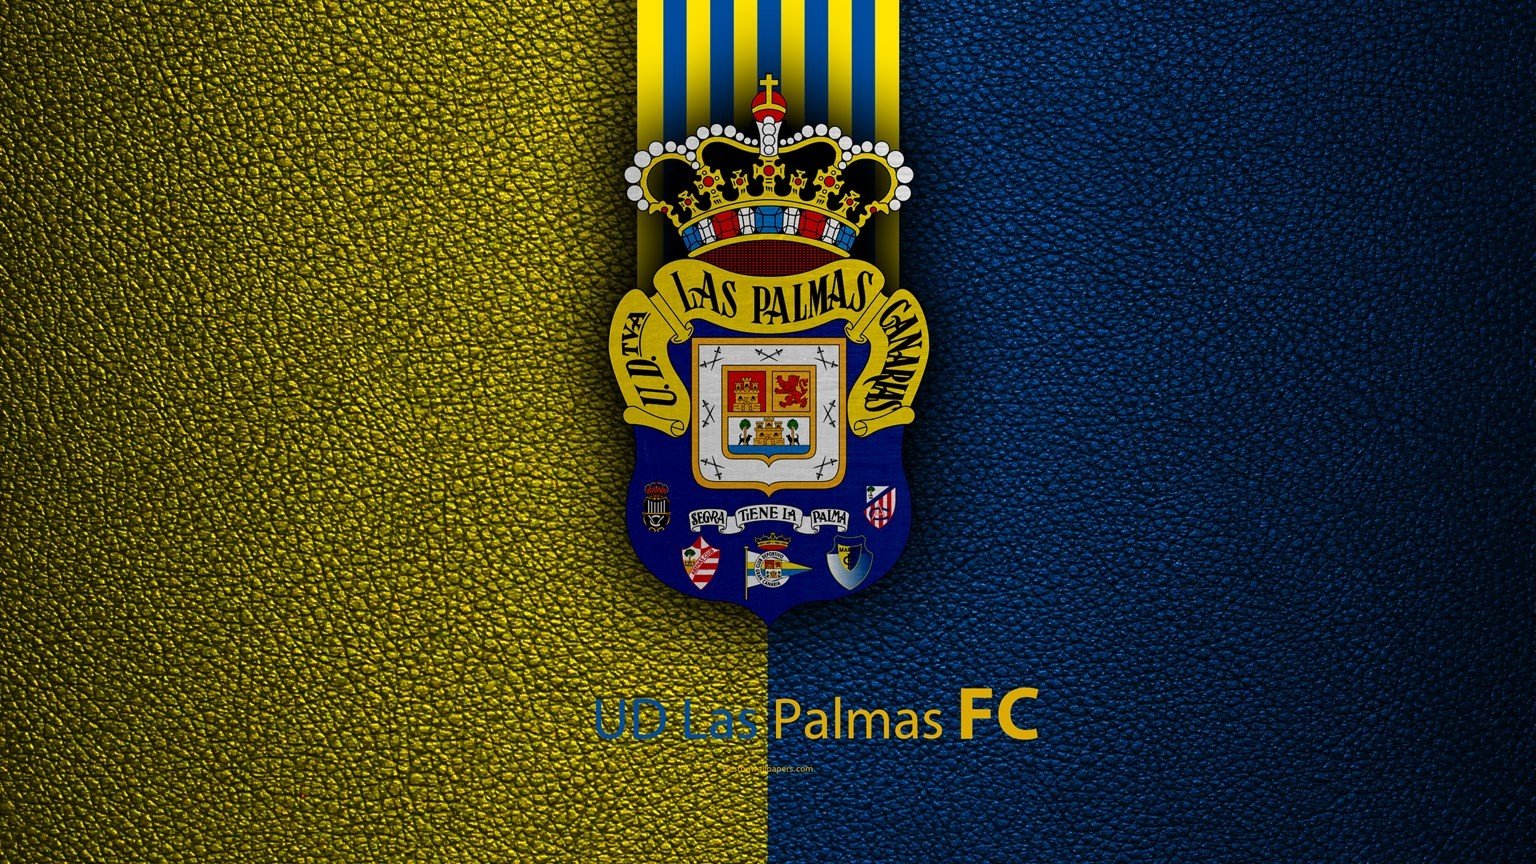 ud-las-palmas-fc-4k-spanish-football-club-la-liga-logo-besthqwallpapers.com-1536x864